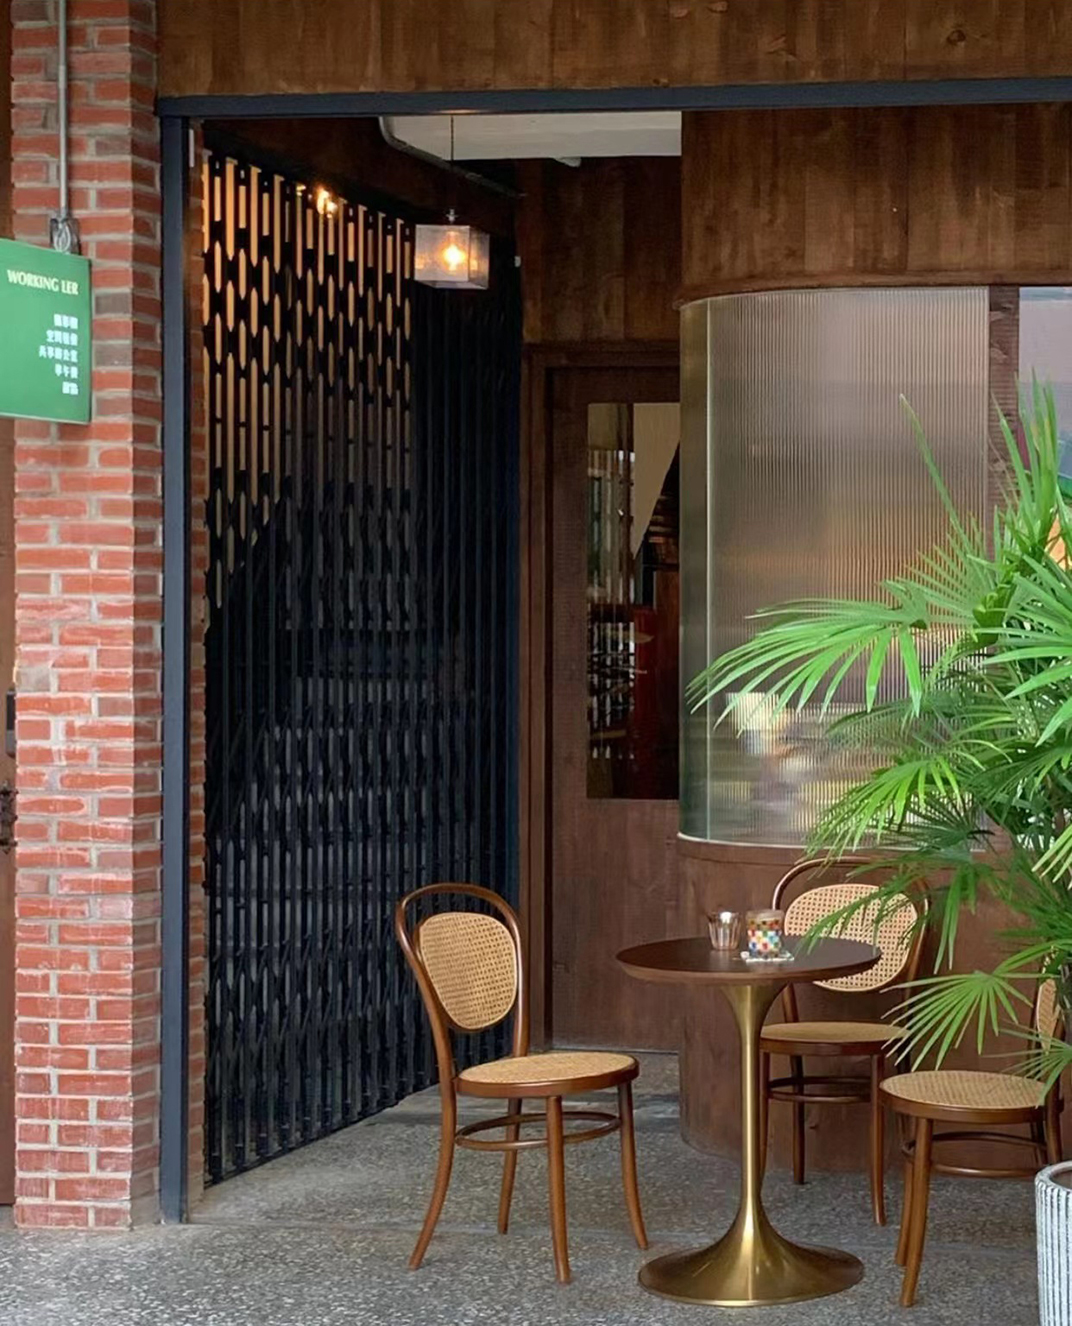 街区复古老宅咖啡店 台湾 武汉 咖啡馆 复古 长虹玻璃 木饰面 logo设计 vi设计 空间设计